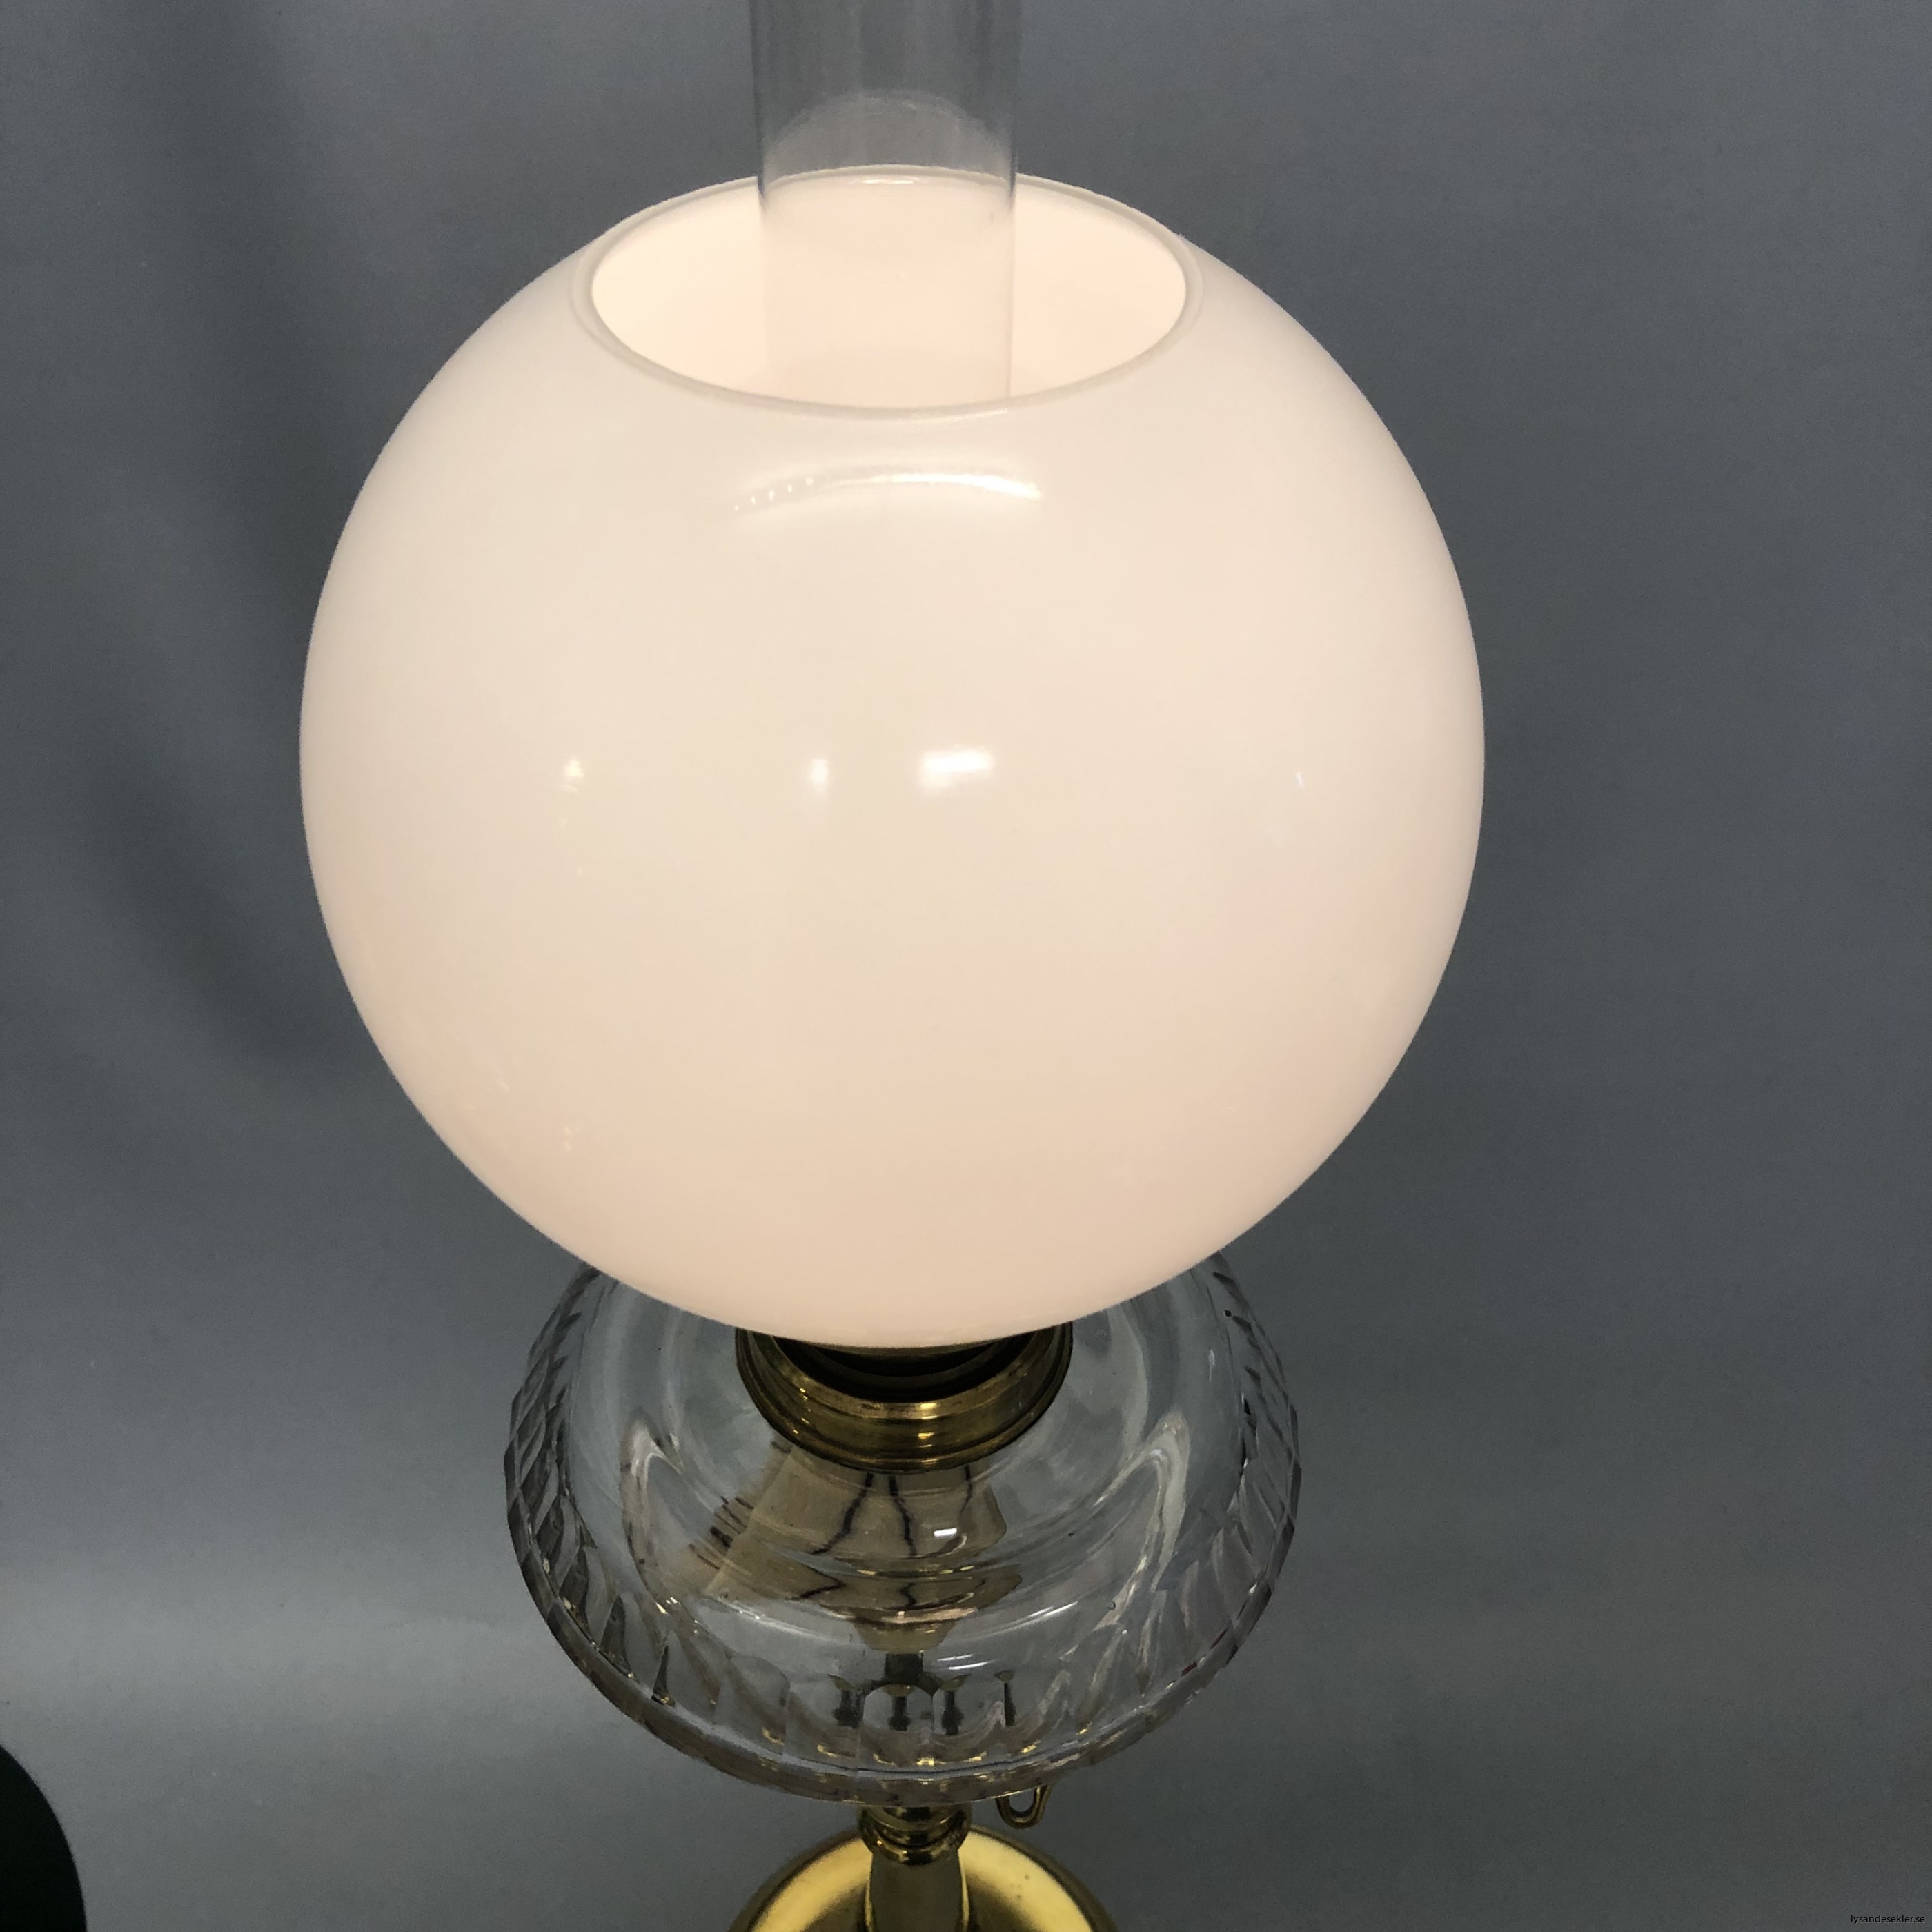 opalvit fotogenlampskupa kupa till fotogenlampa vit opal4